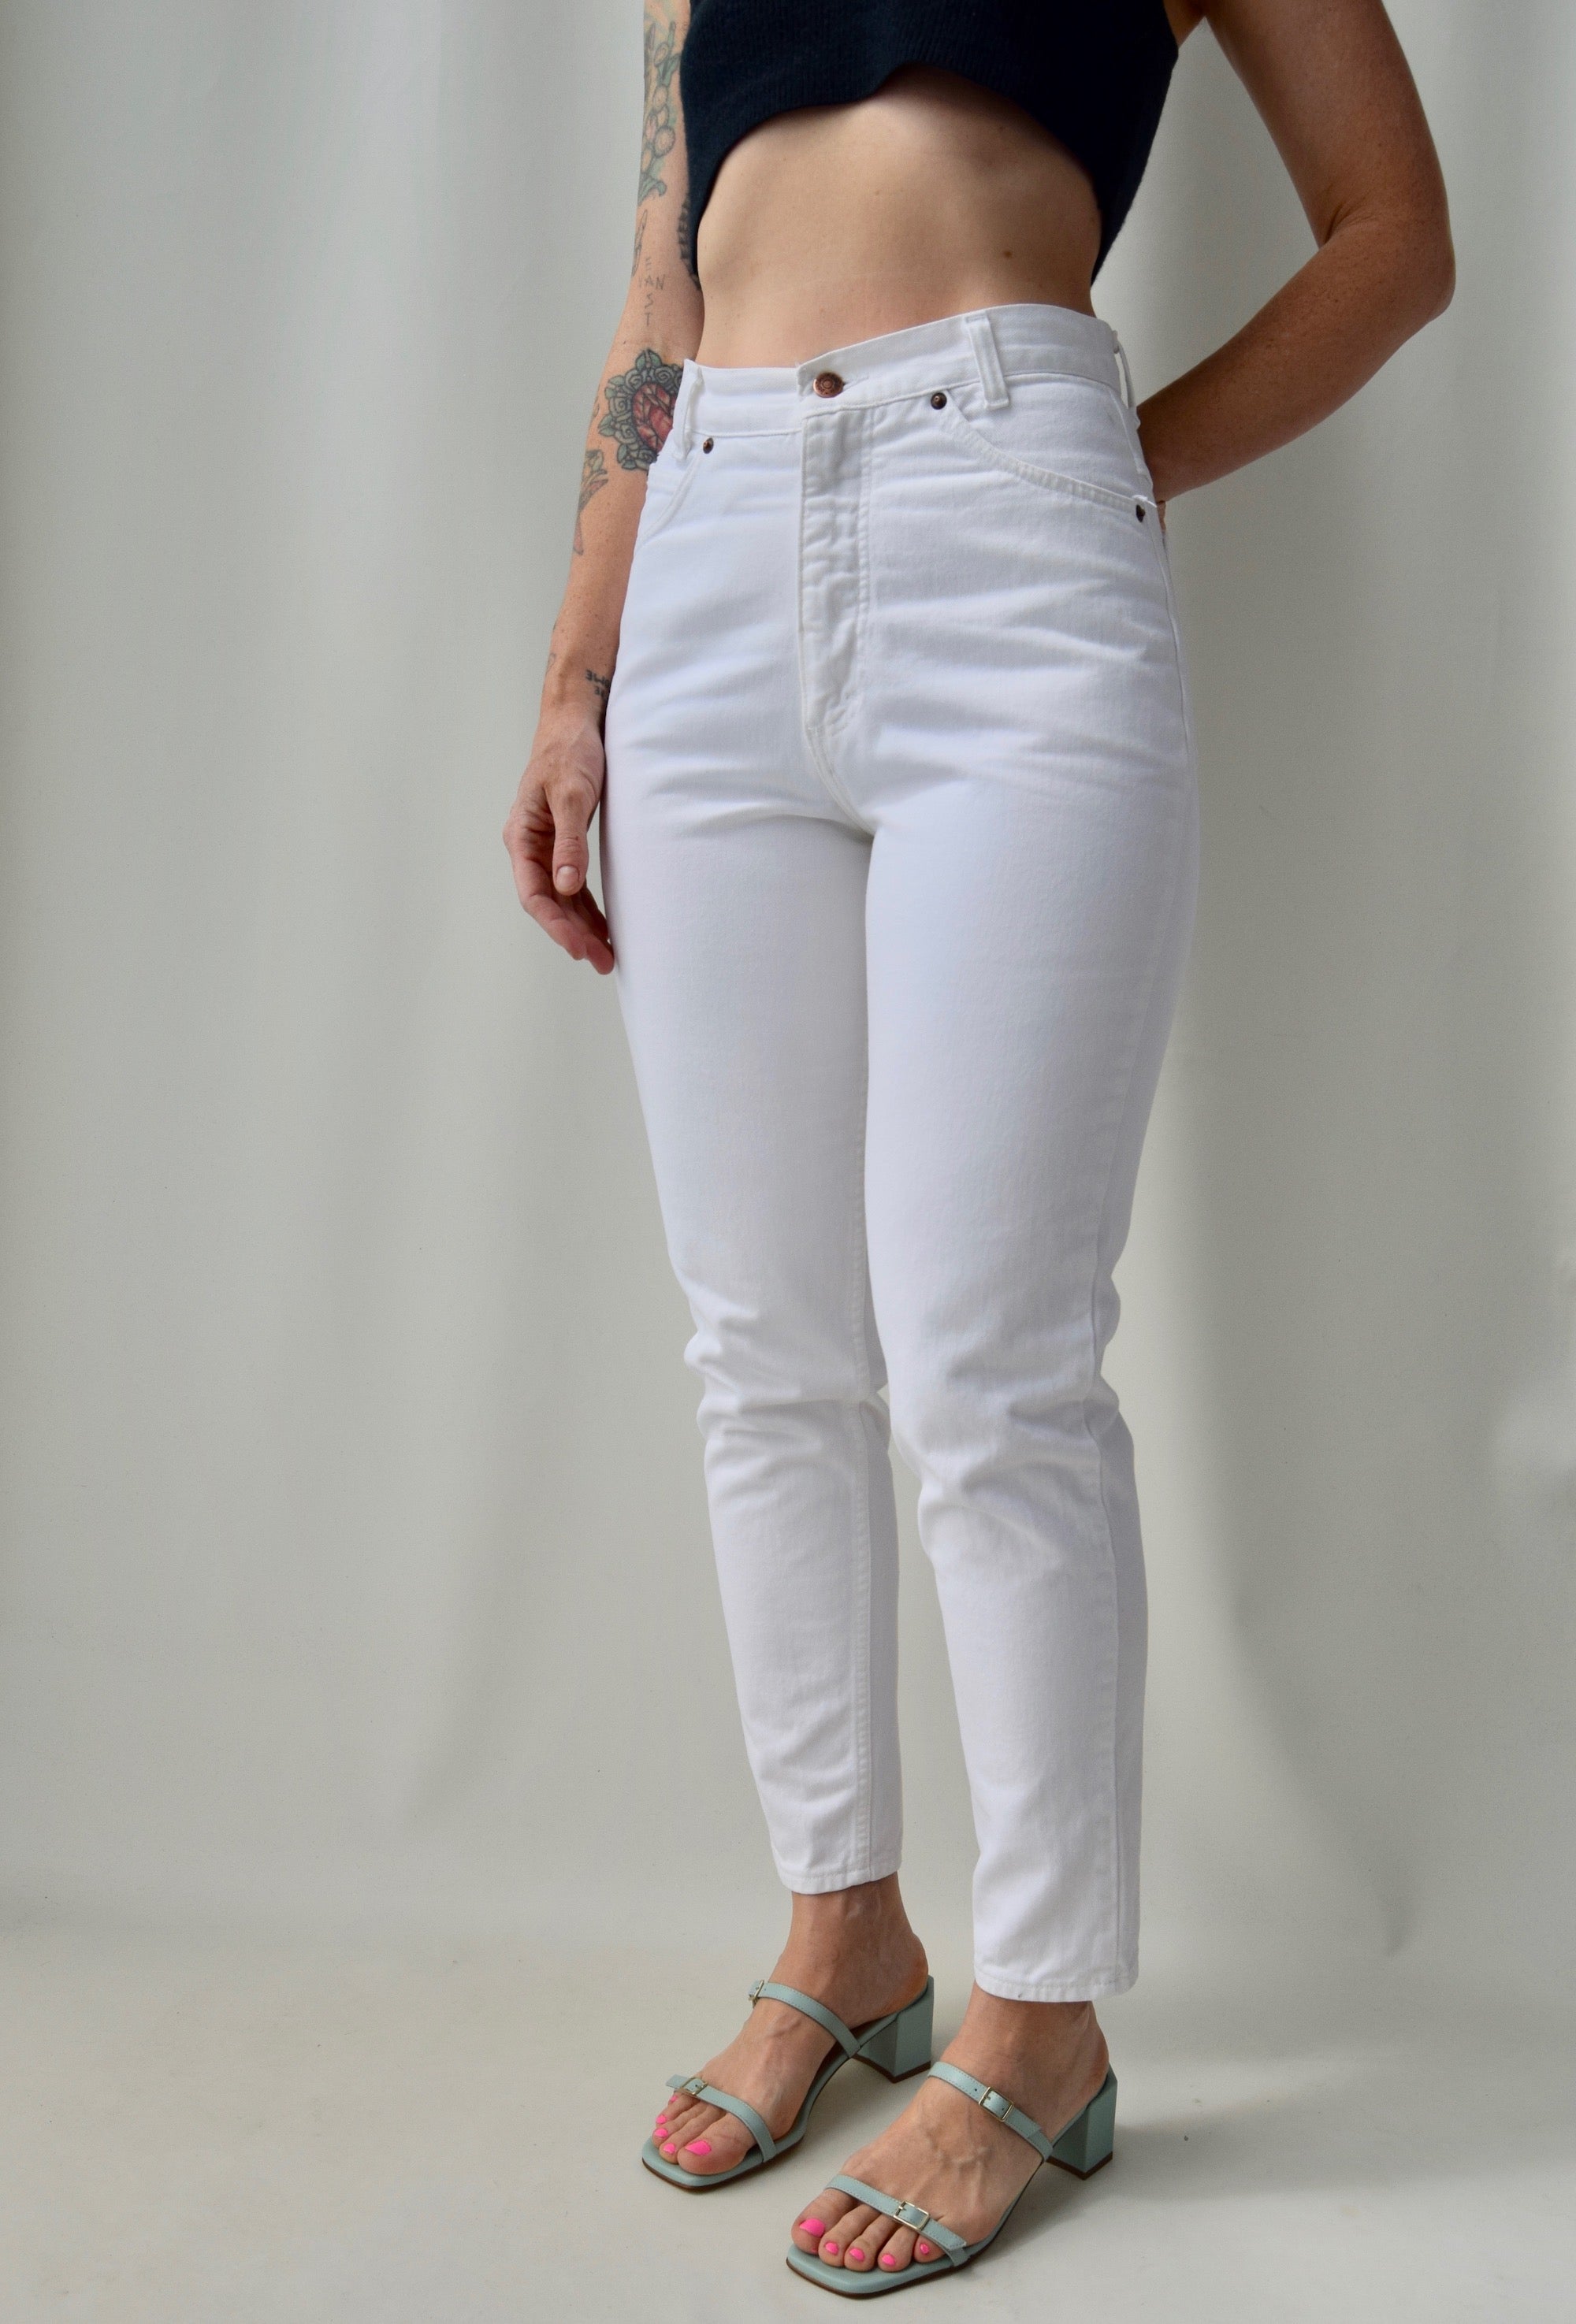 'Bonjour' White Jeans